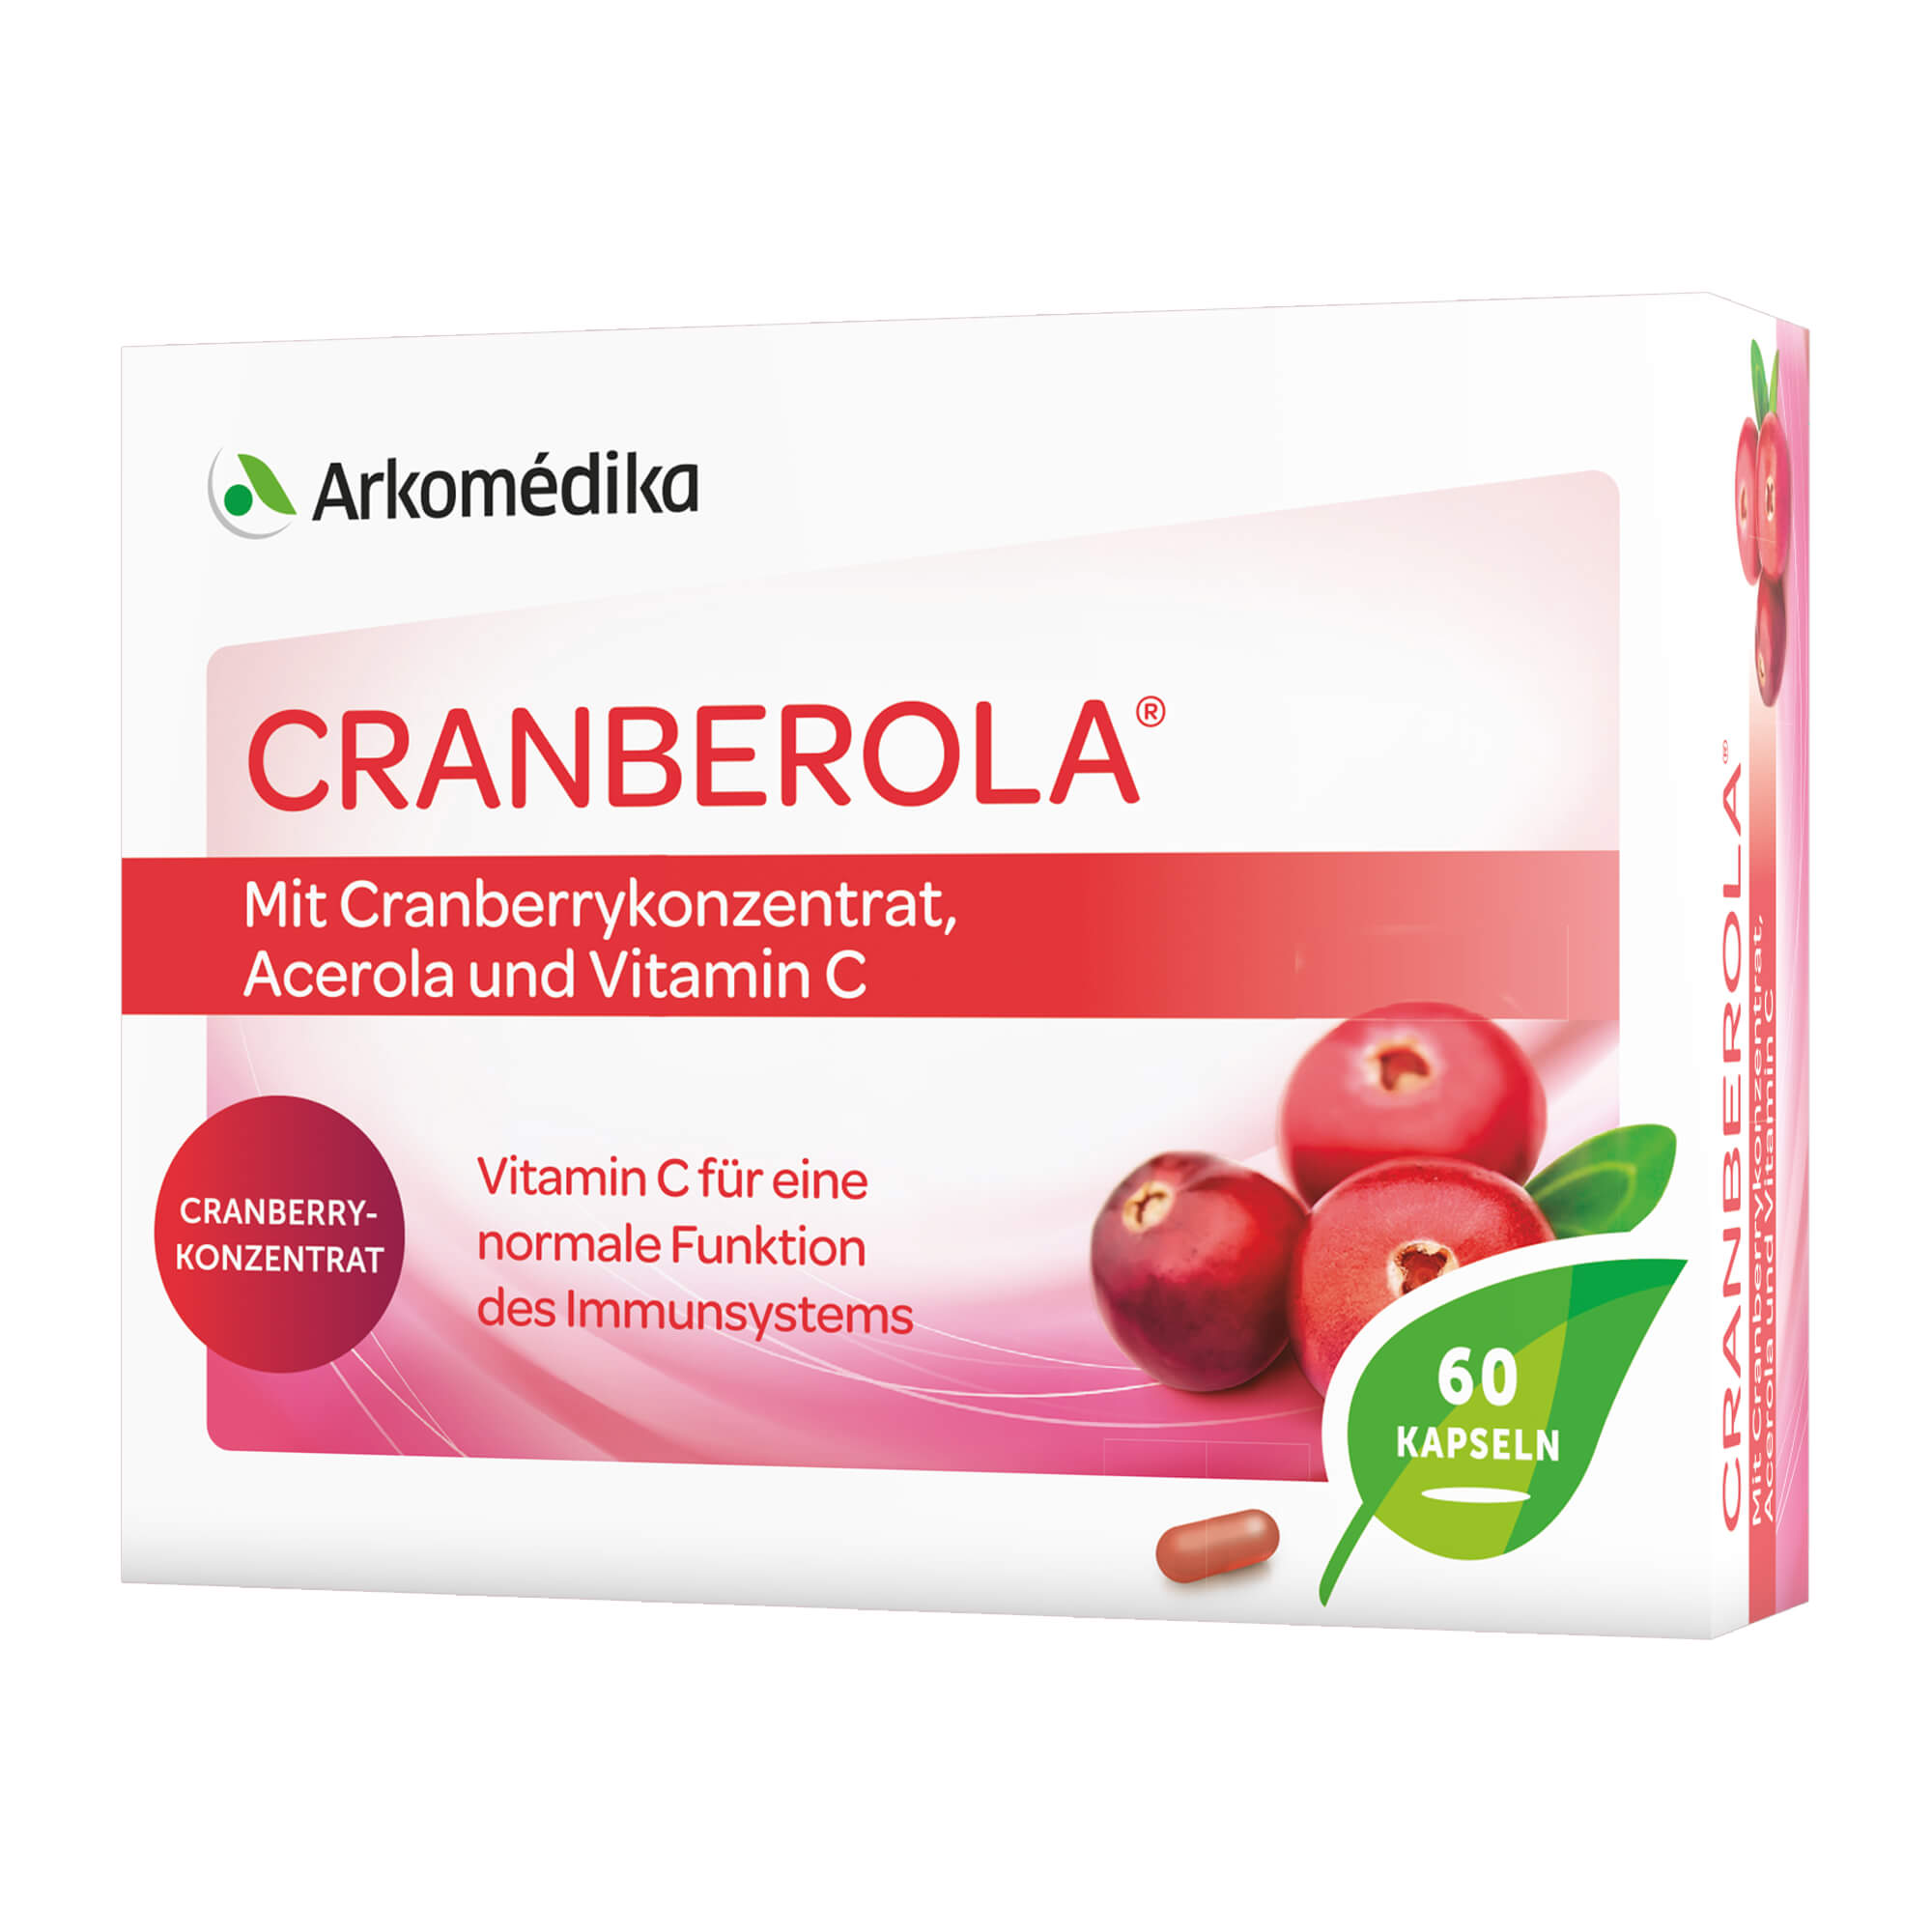 Nahrungsergänzungsmittel mit Cranberry-Fruchtpulver, Acerolakirschextrakt und Vitamin C.